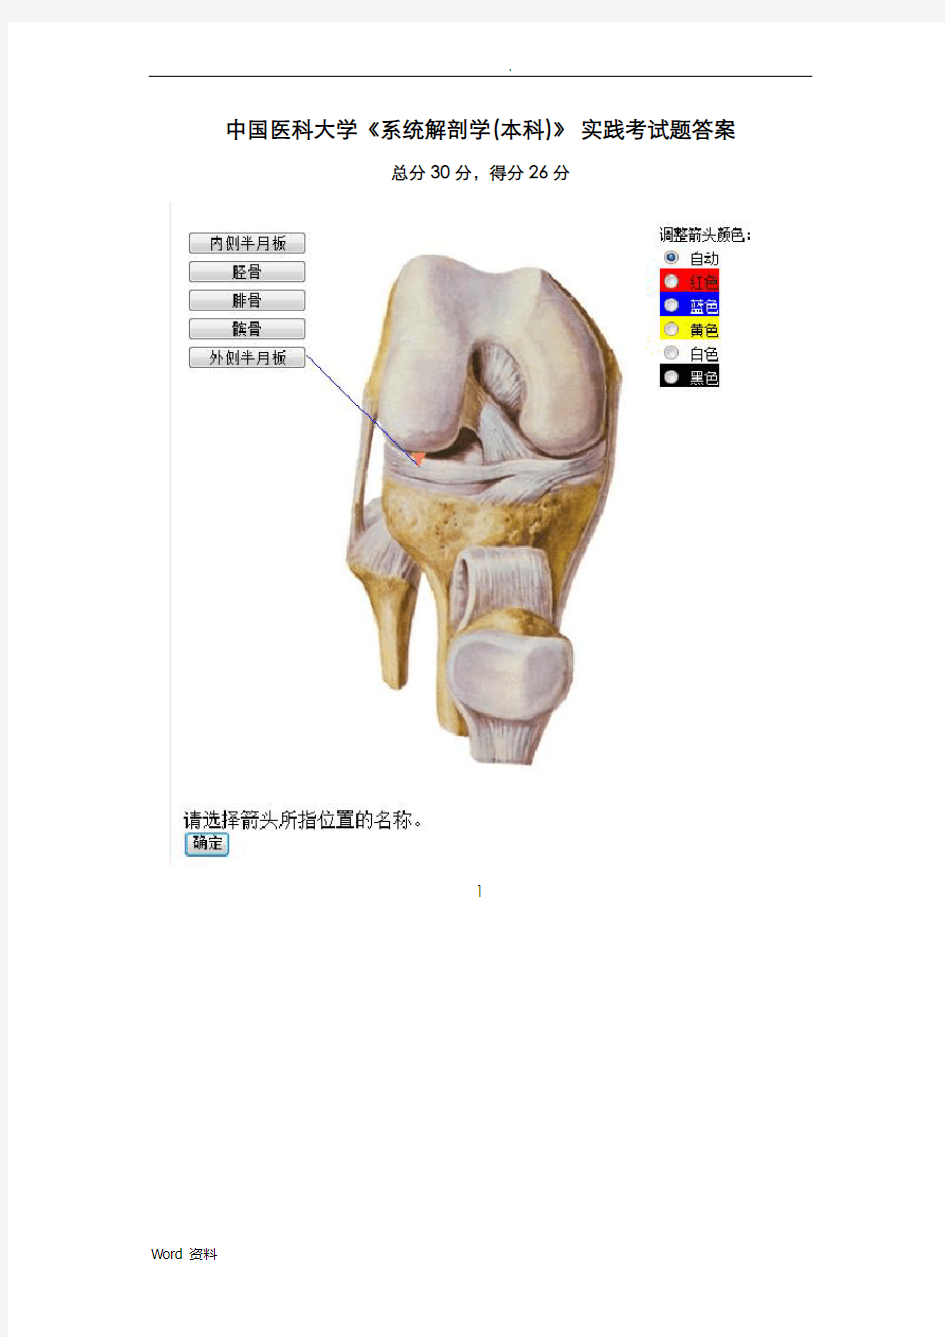 中国医科大学系统解剖学(本科)-实践考试题答案